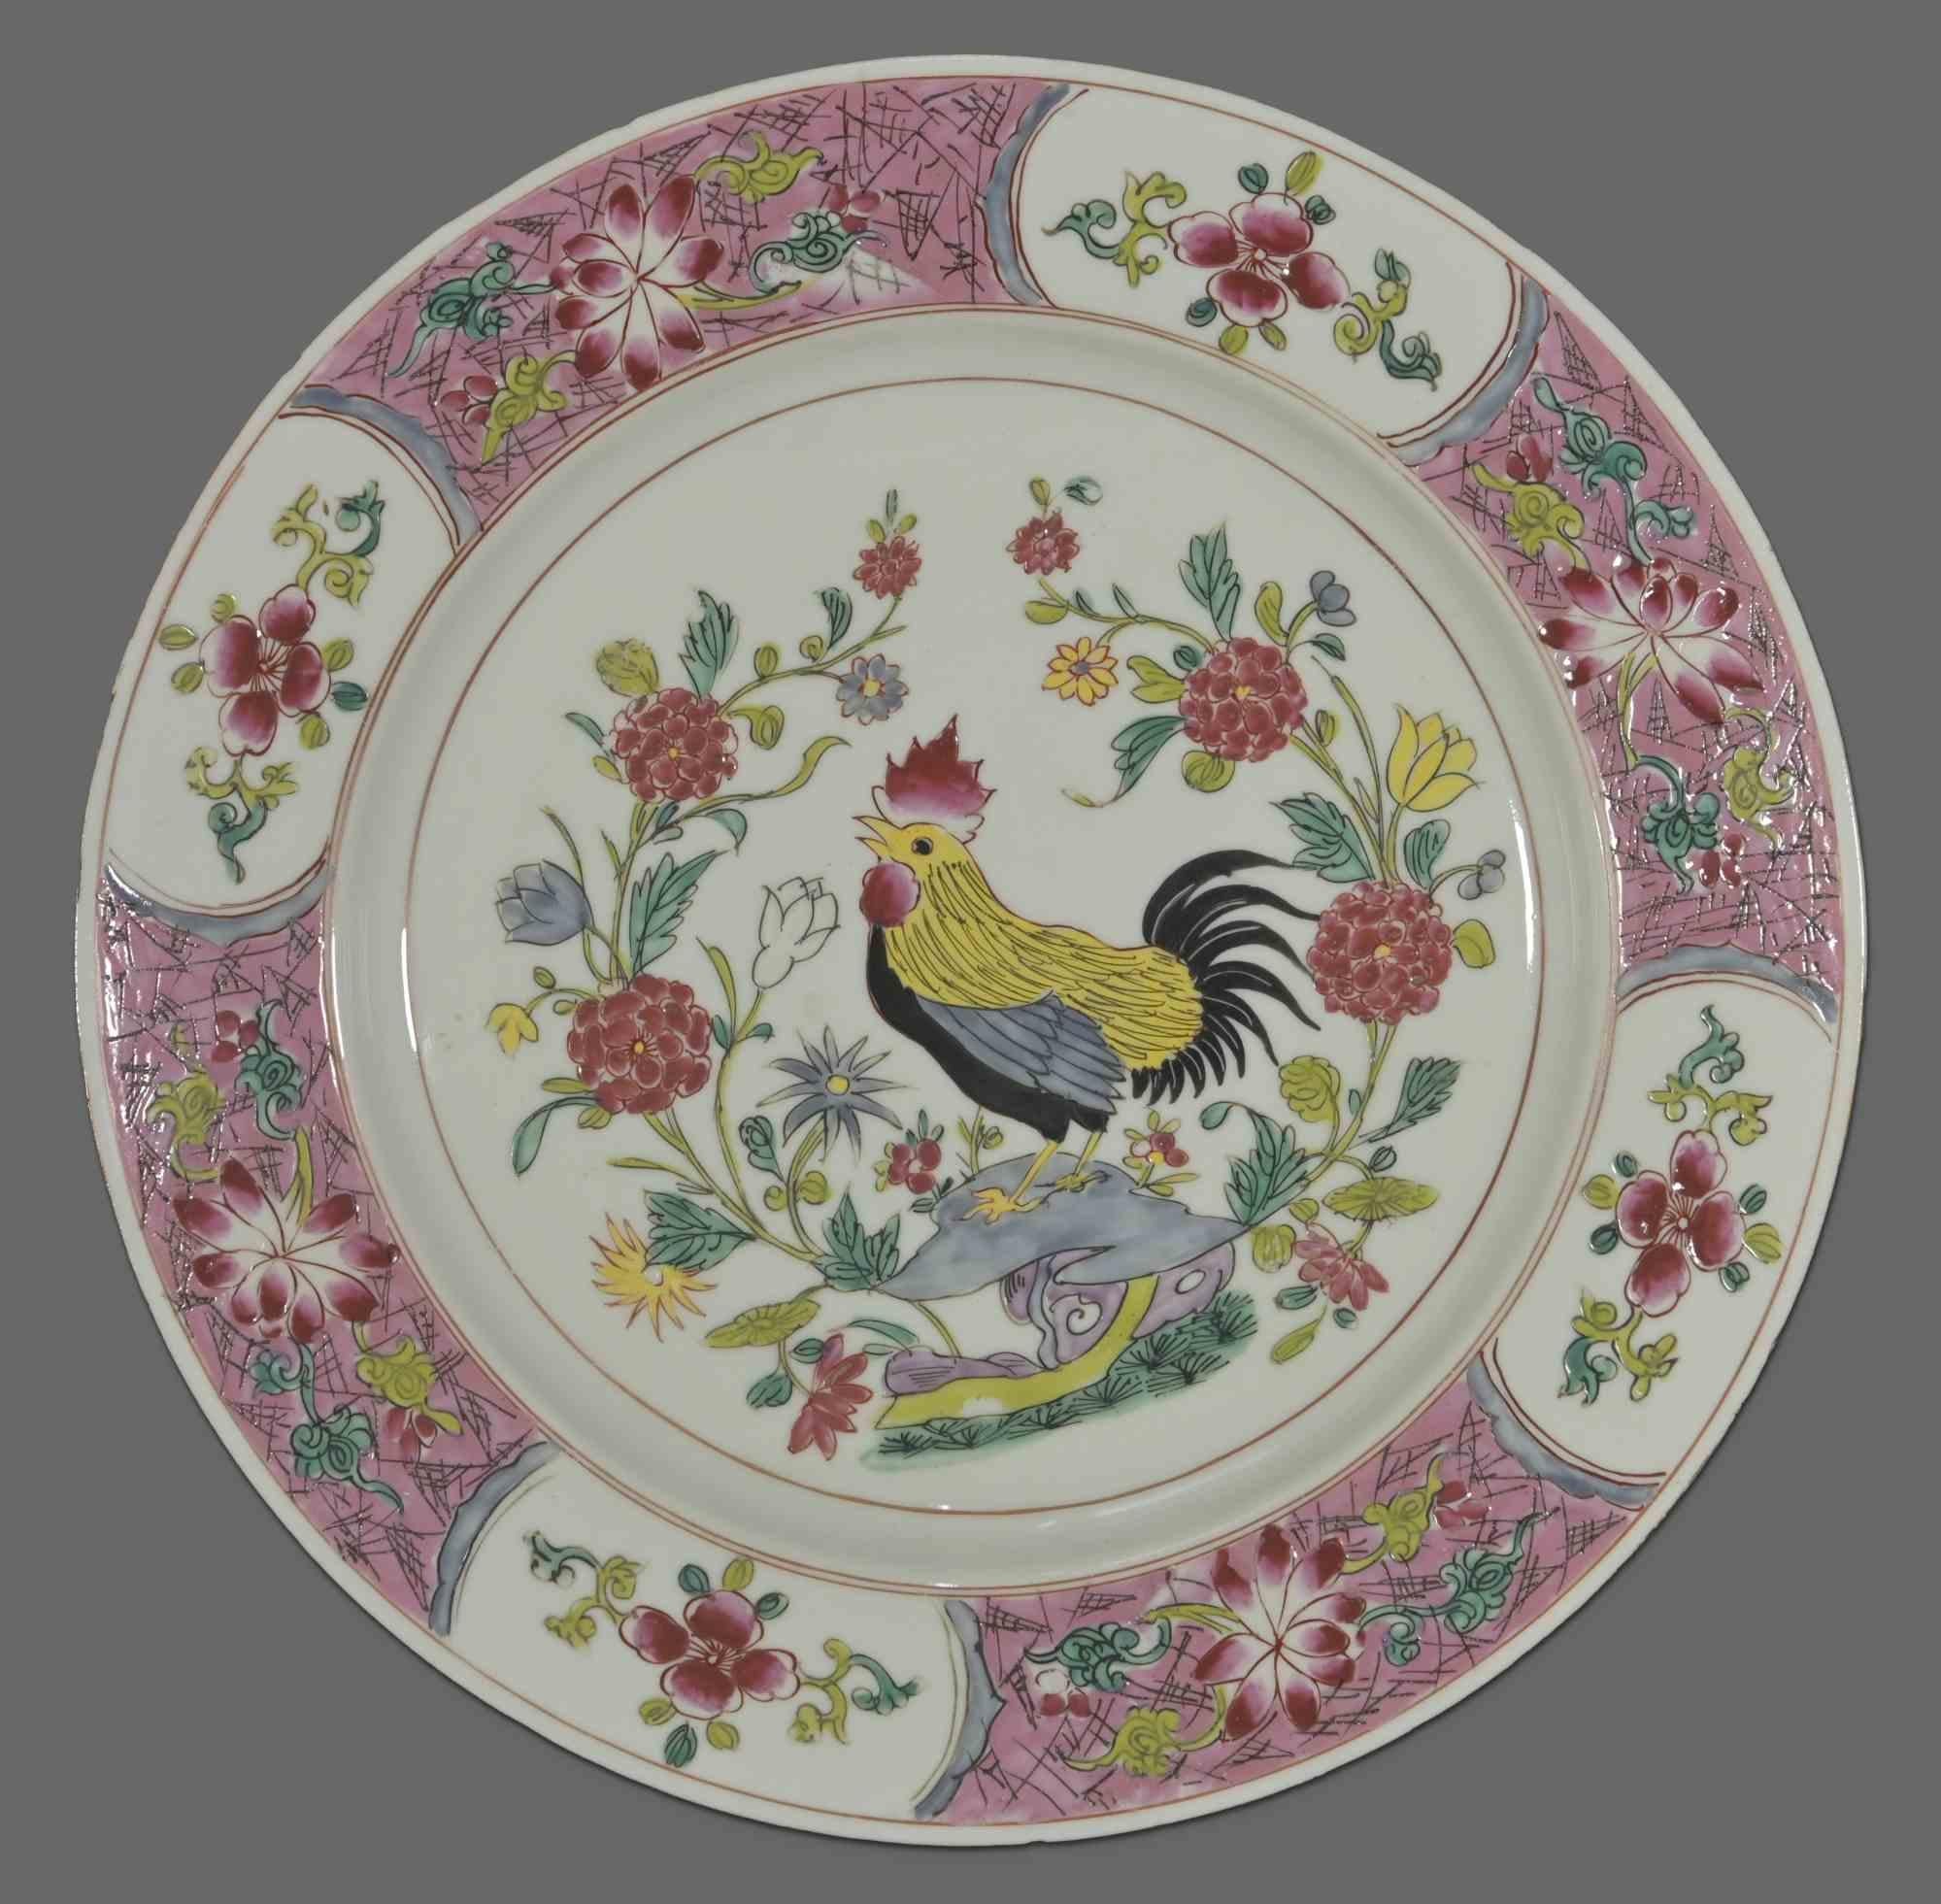 Assiettes en céramique chinoise, Chine, milieu du 20e siècle. 

Motifs floraux sur le bord et coq au centre de l'assiette 

Diamètre du plateau  24 cm.

Bonnes conditions.

 